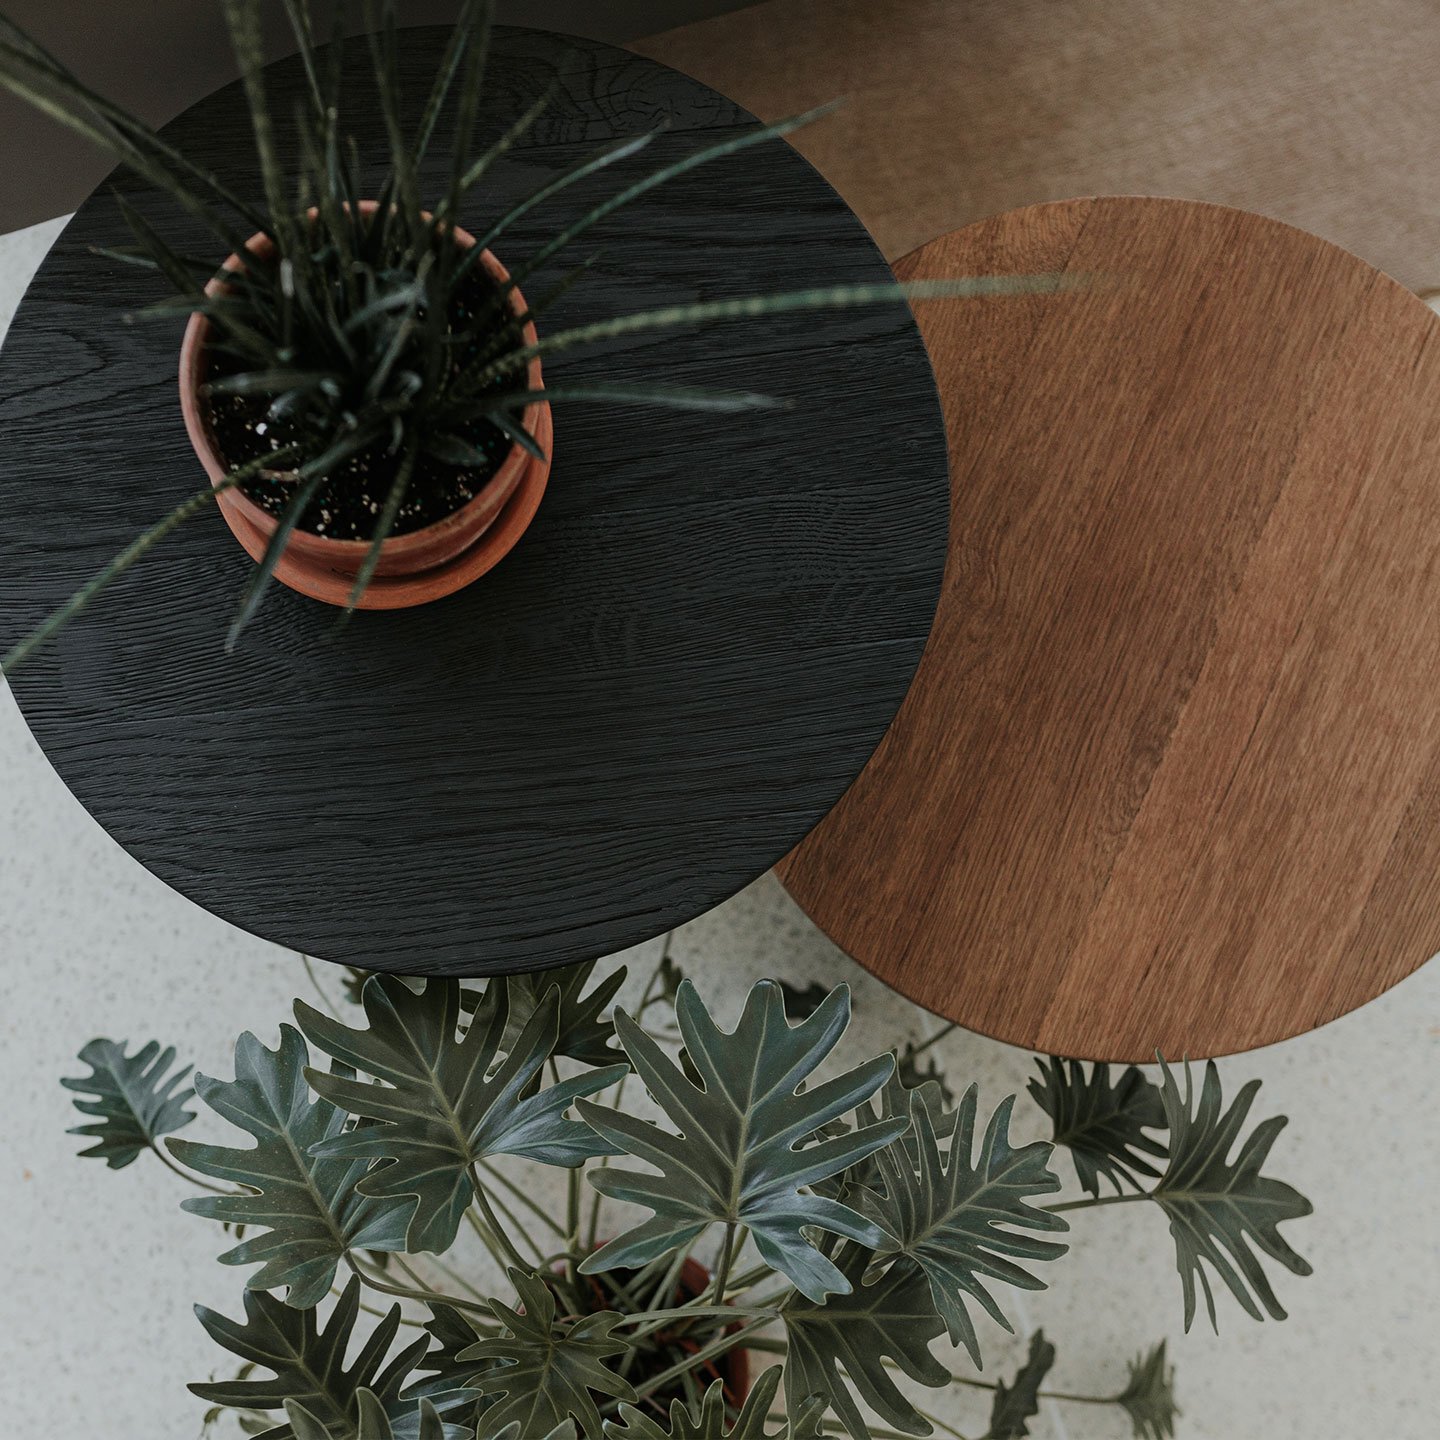 La mesa de centro Mush juega intuitivamente con las proporciones entre su robusta base cilíndrica y su delicado tablero circular, imitando la forma de un champiñón, y aporta un contraste divertido en cualquier entorno.